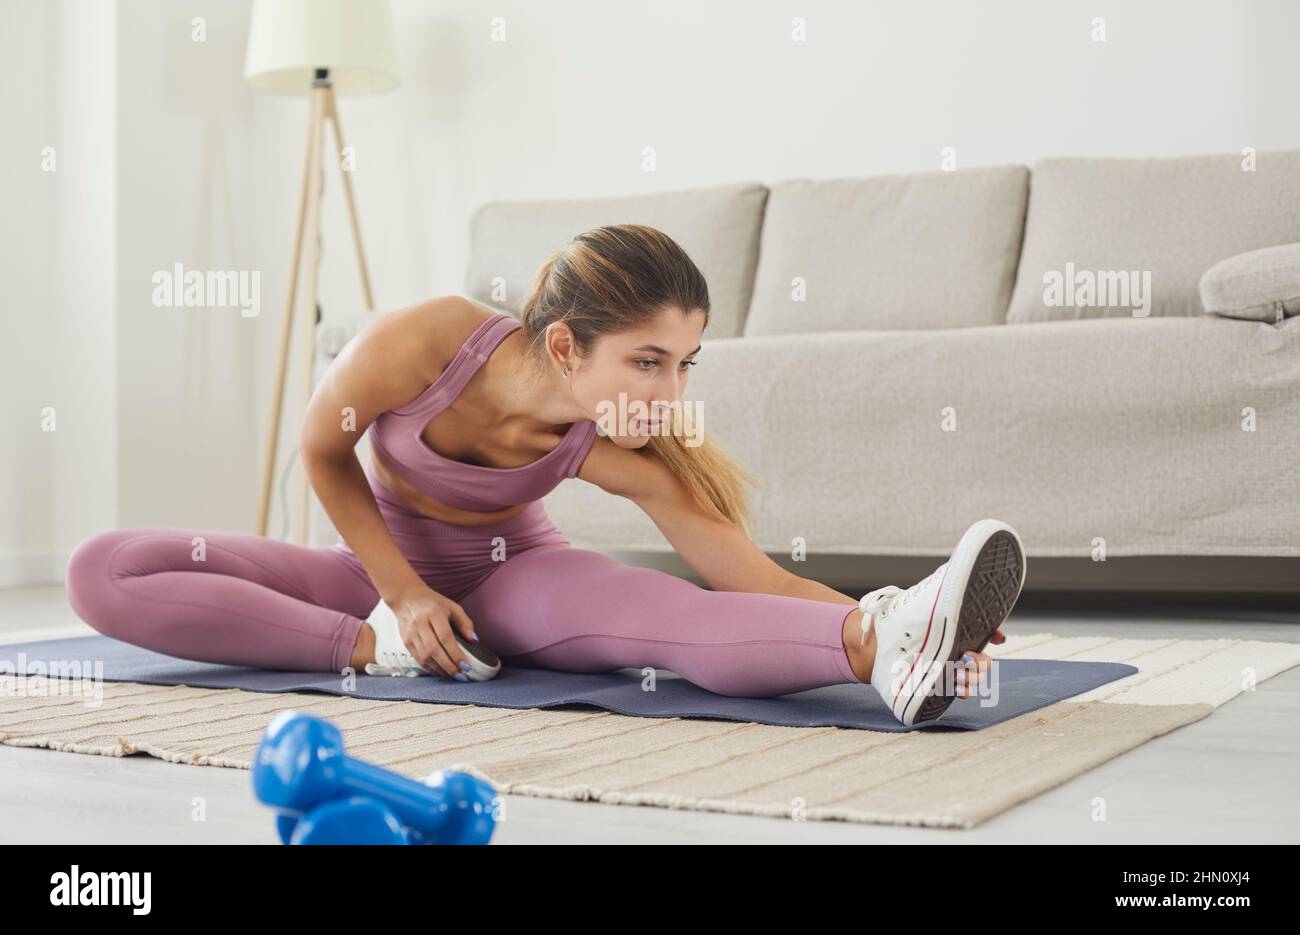 Frau mit hoher Körperflexibilität, die ihr Bein zum Aufwärmen streckt und dabei Aerobic-Gymnastik-Übungen macht. Stockfoto